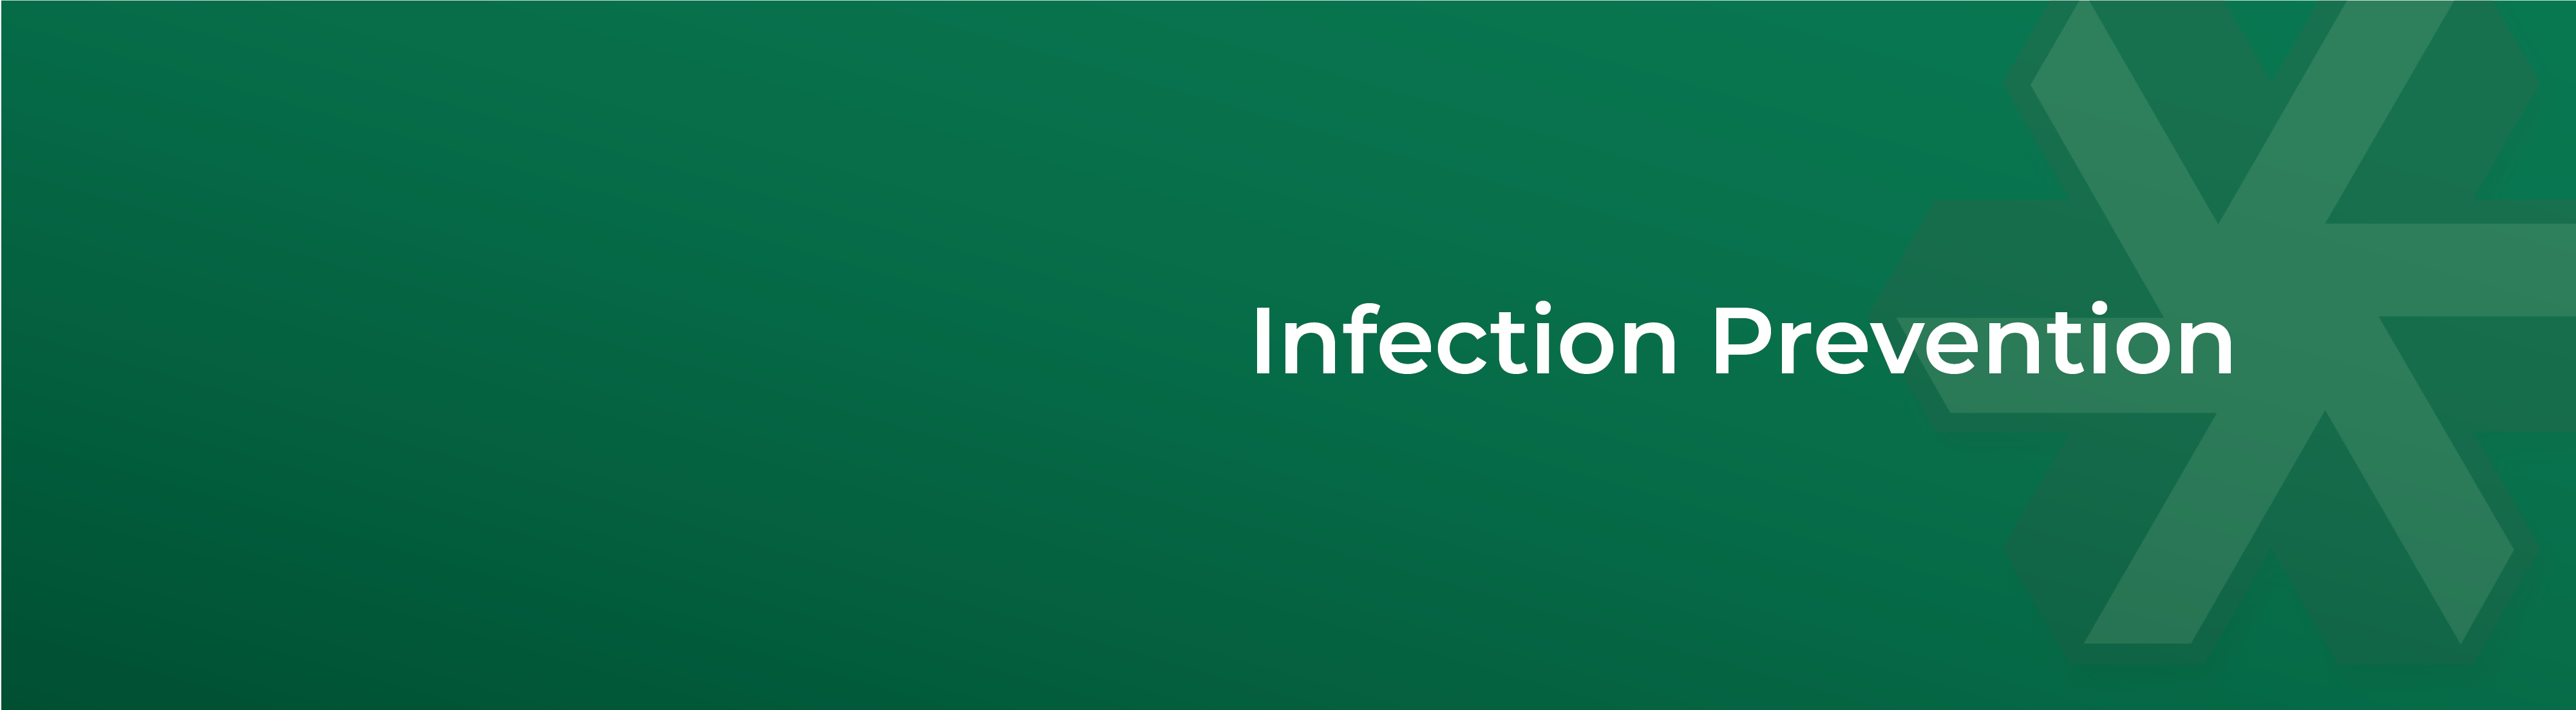 InfectionPrevention-Header-01